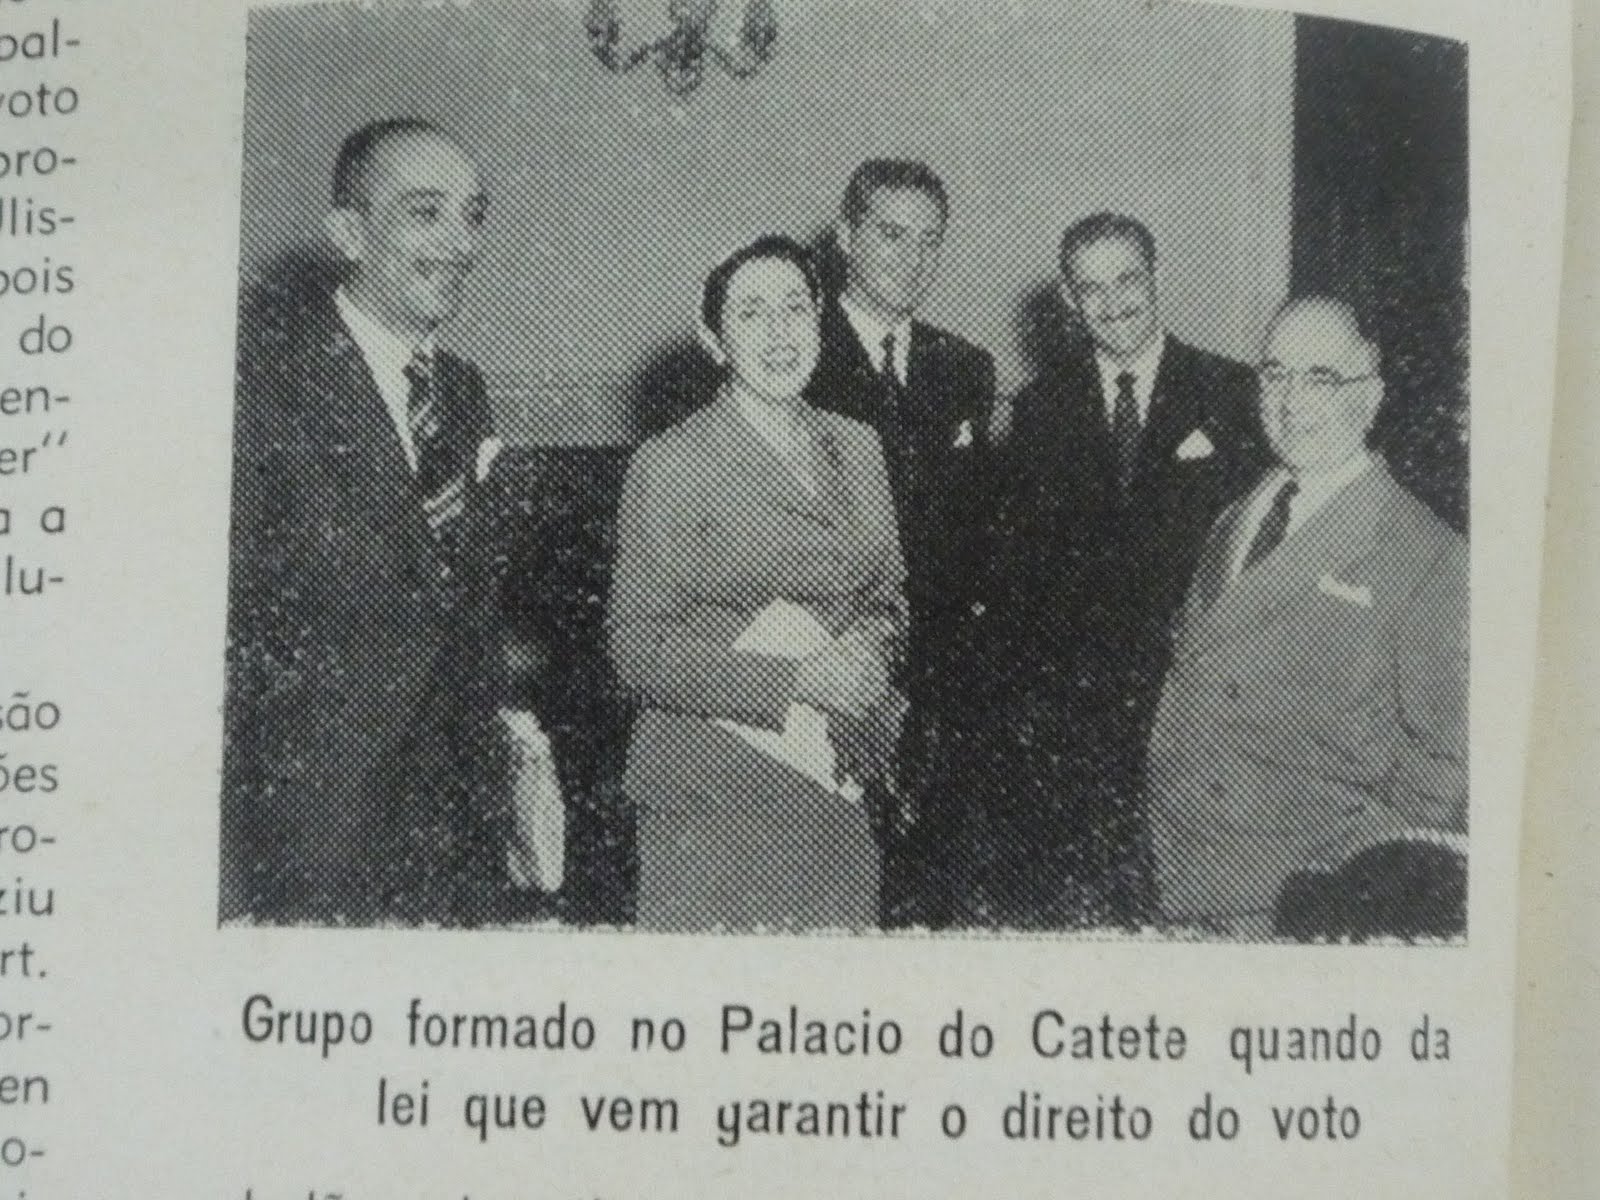 [Palacio+do+Catete+1951.jpg]